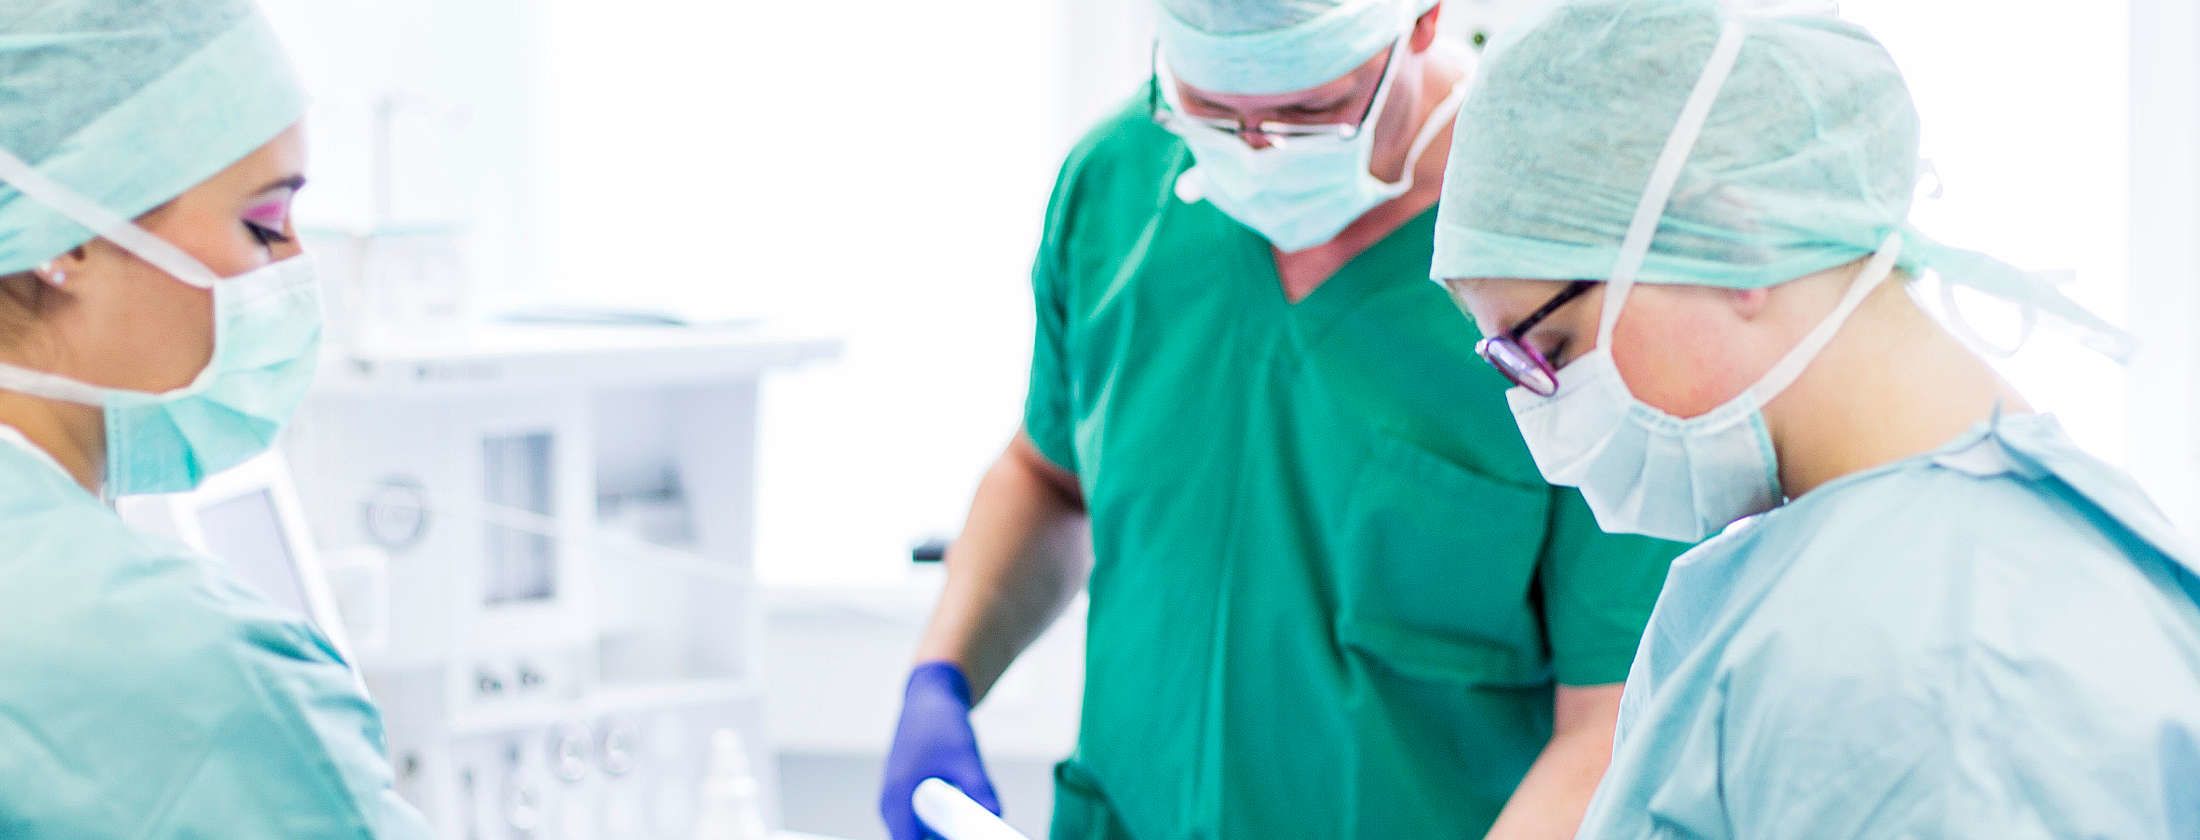 Хирурги и медсестры при пластической операции в частной клинике Франкфурта, ФРГ. Специализированный персонал одет в специальную одежду ради гигиены. Врачи выполняют с помощью хирургических инструментов пластическую и эстетическую операцию.